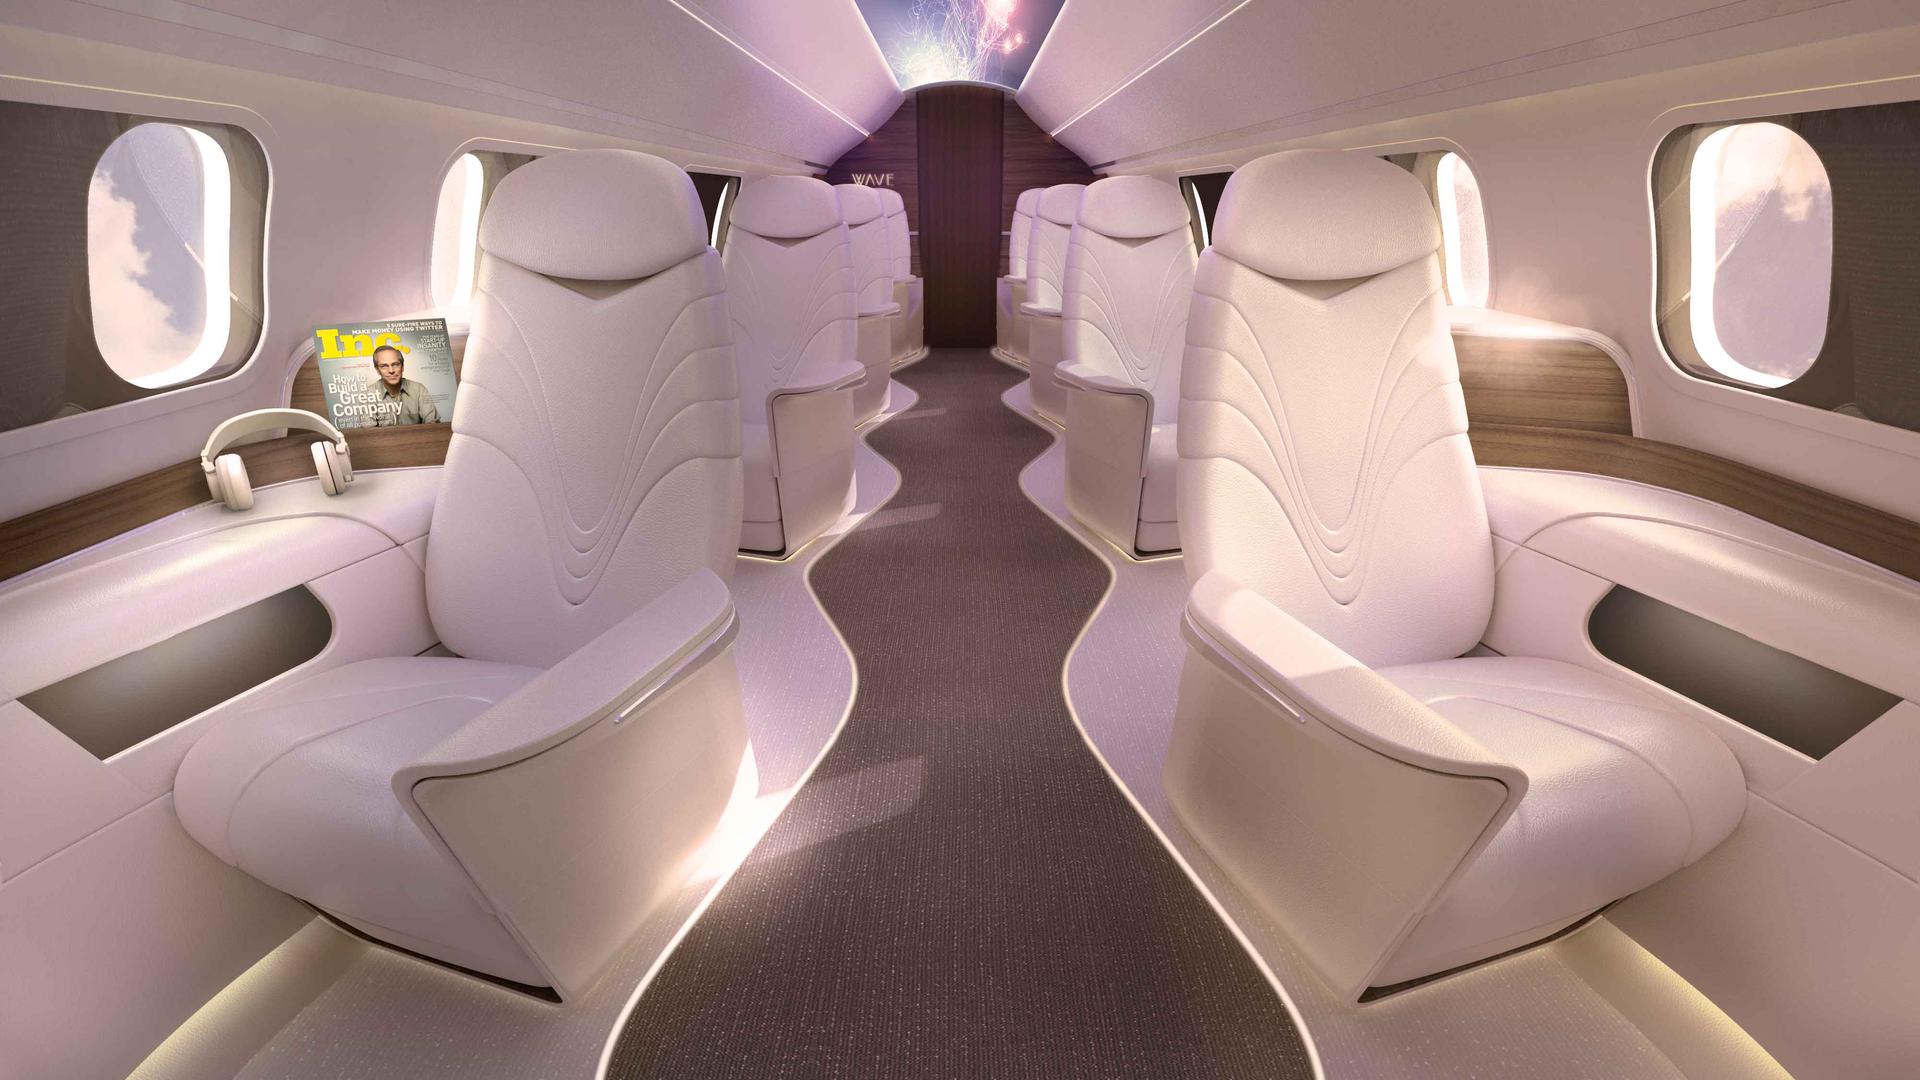 Let privatnim zrakoplovom više neće biti rezerviran samo za bogataše. Barem je tako najavio mladi, 21- godišnji američki poduzetnik, Zander Futernick, vlasnik avio kompanije Fly AURA, koji je odlučio i onima plićeg džepa omogućiti iskustvo luksuznog putovanja. 